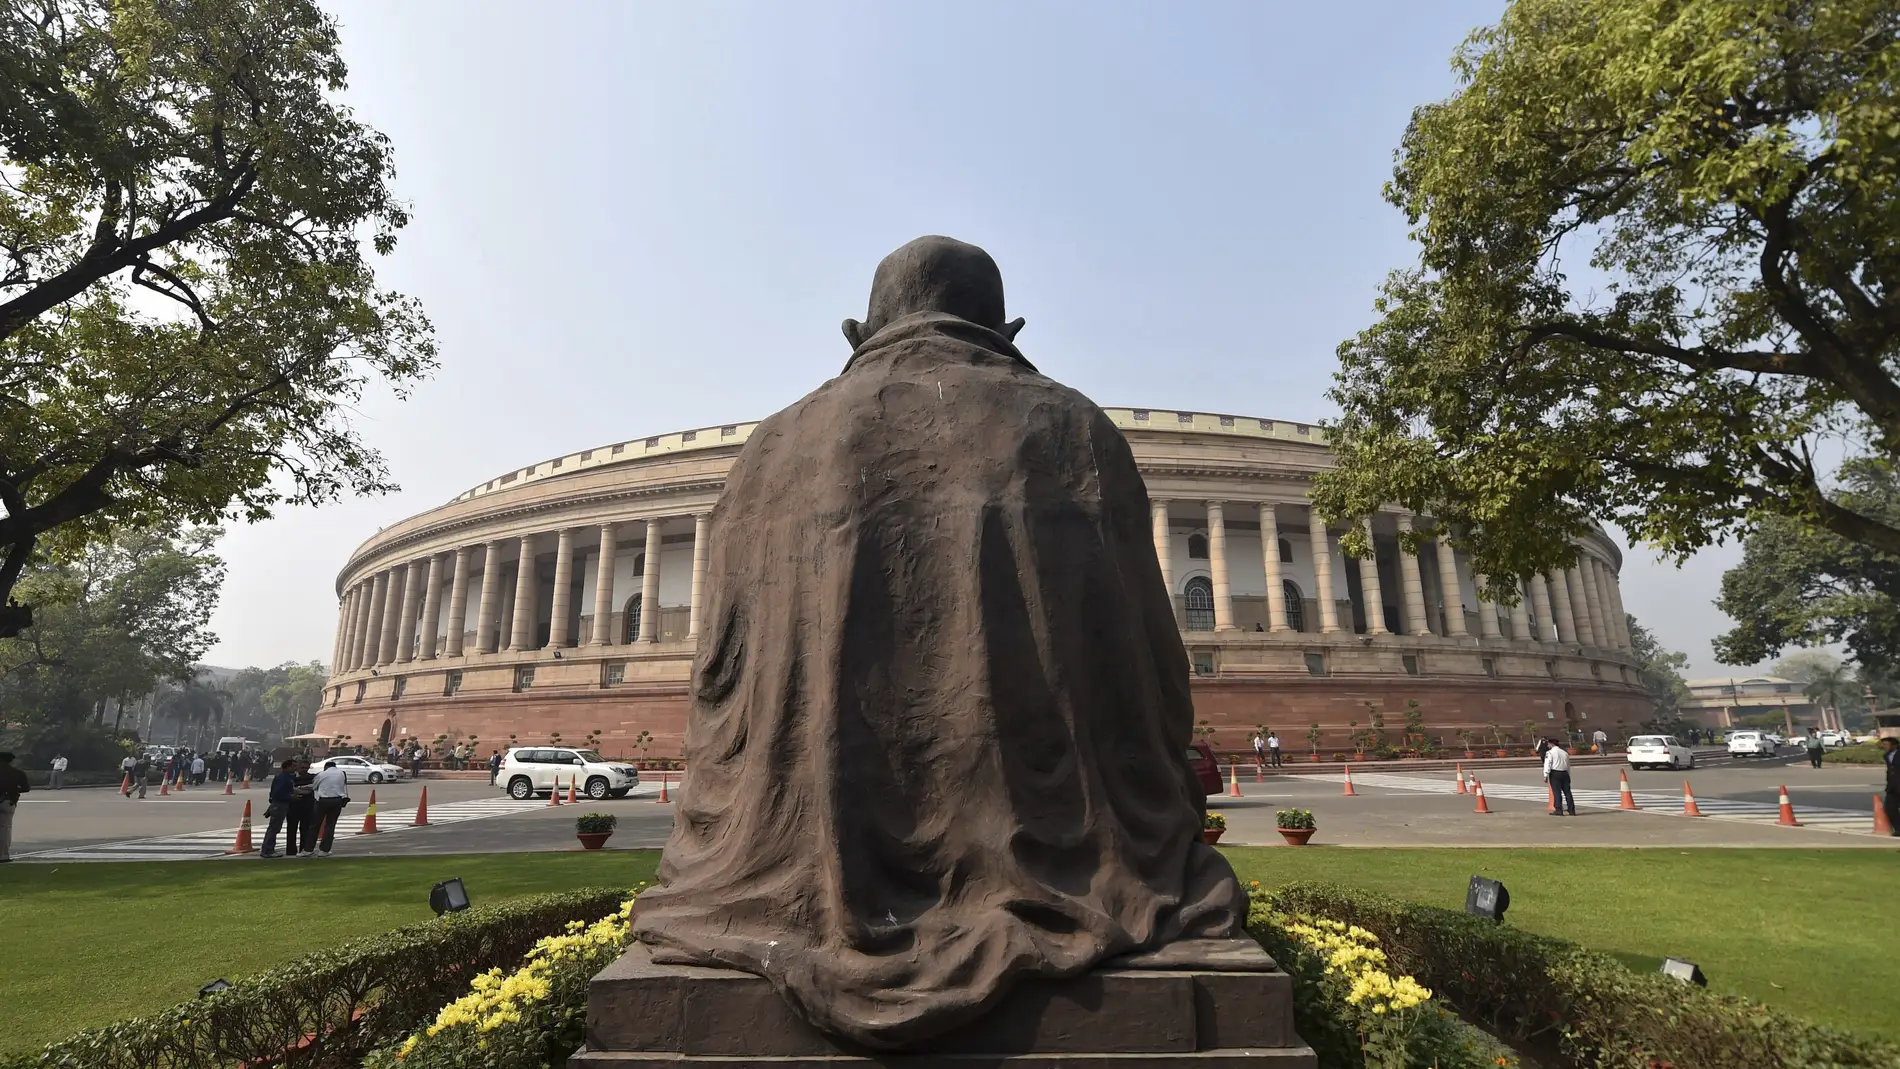 Vista de la parte de atrás de la estatua de Mahatma Gandhi frente al Parlamento en Nueva Delhi